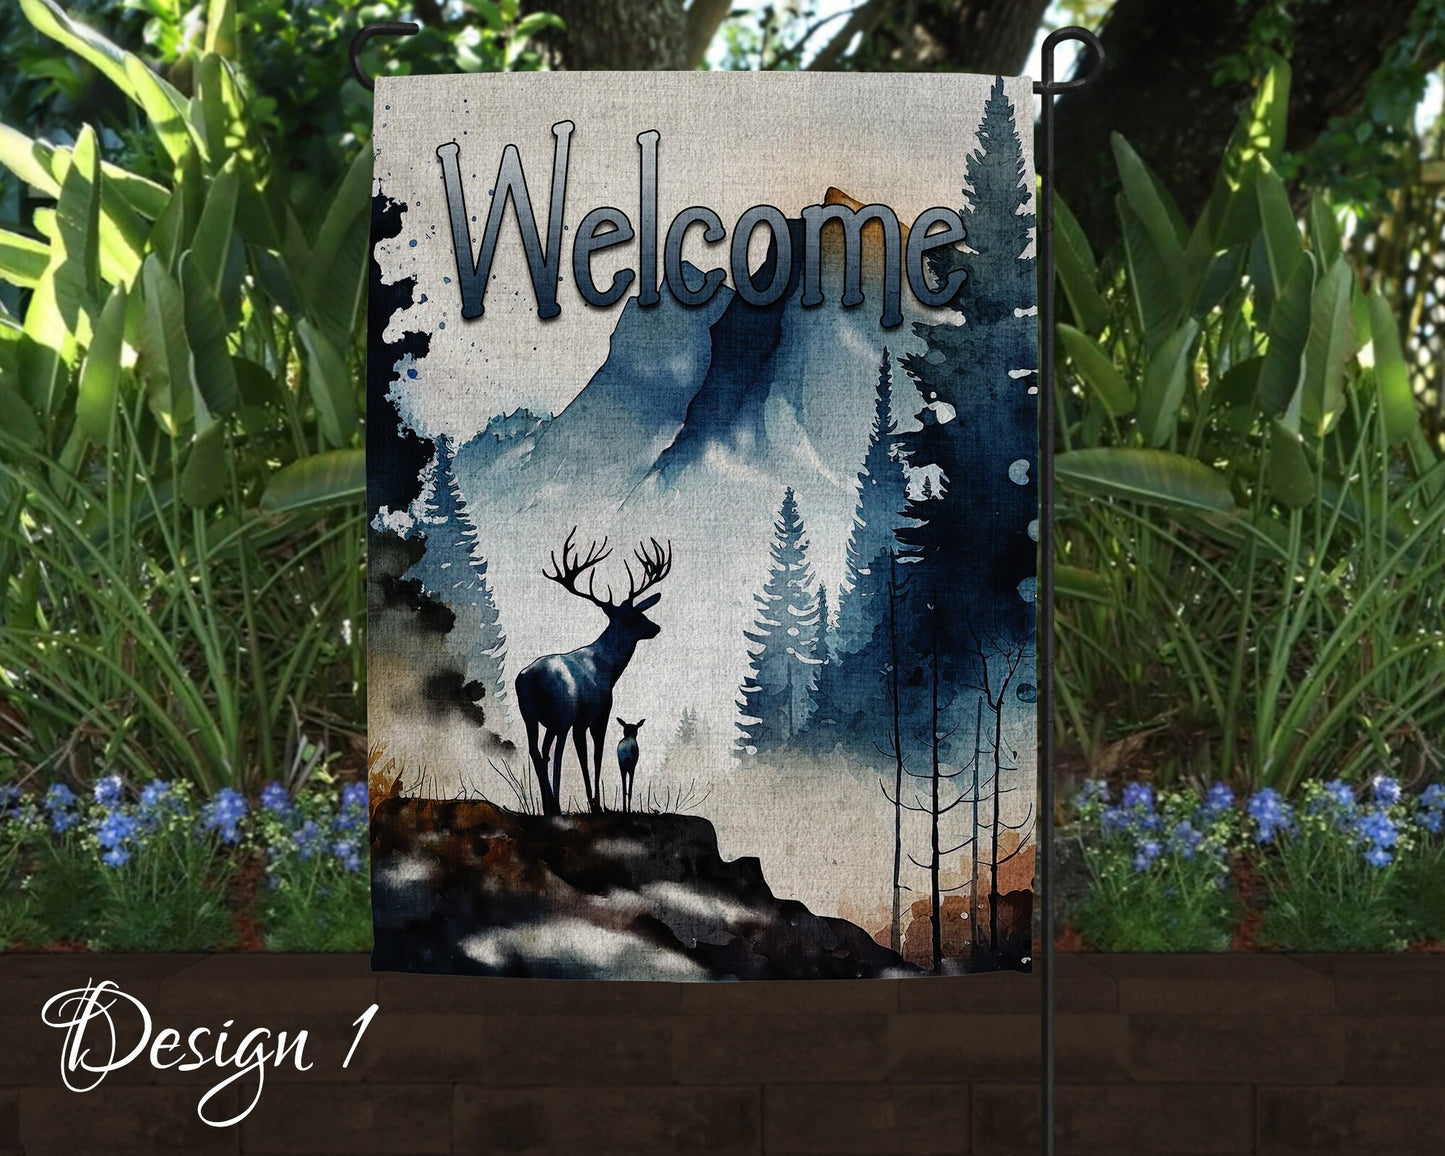 Welcome Deer Art Linen Garden Flag - 3 Design Choices